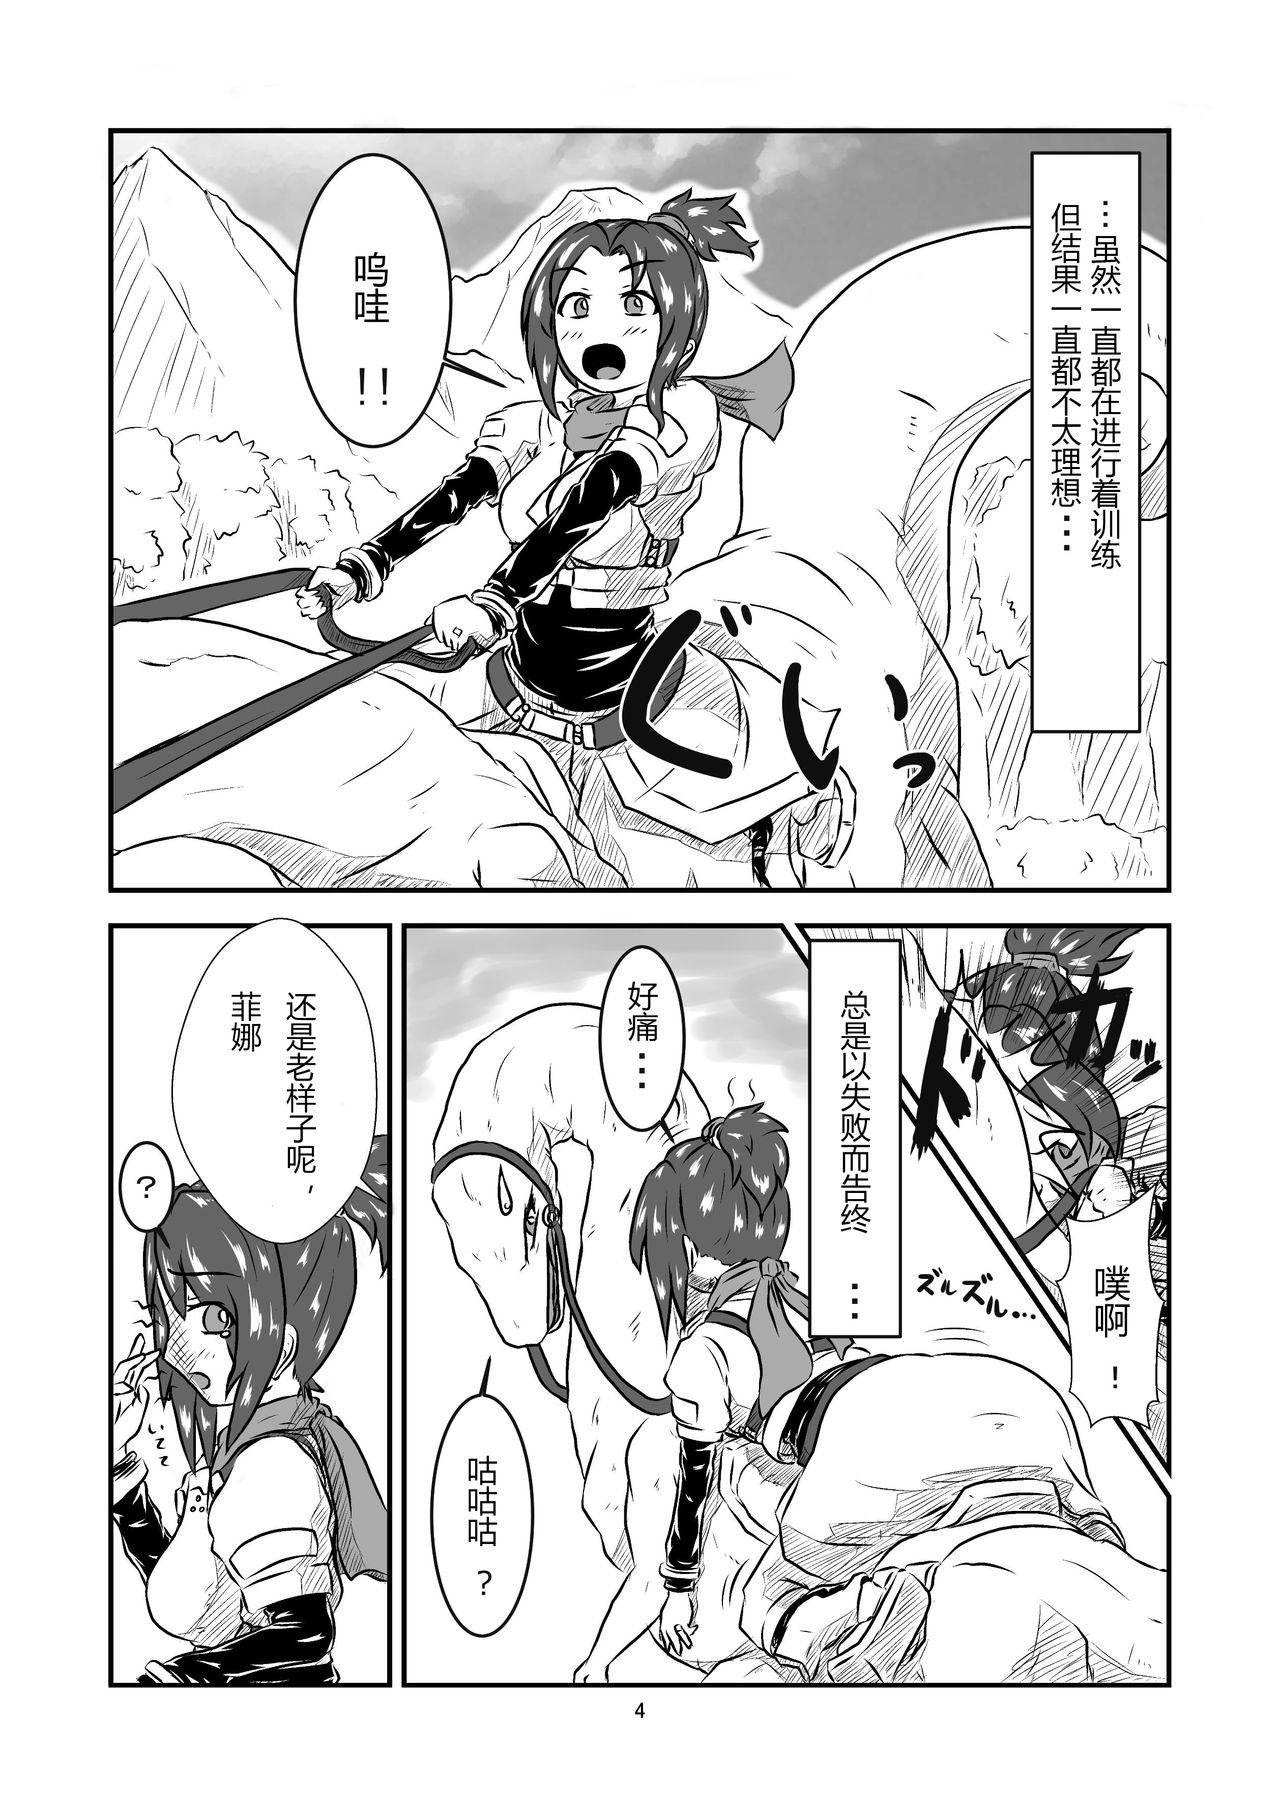 Transex Marunomi Hanashi Banging - Page 4